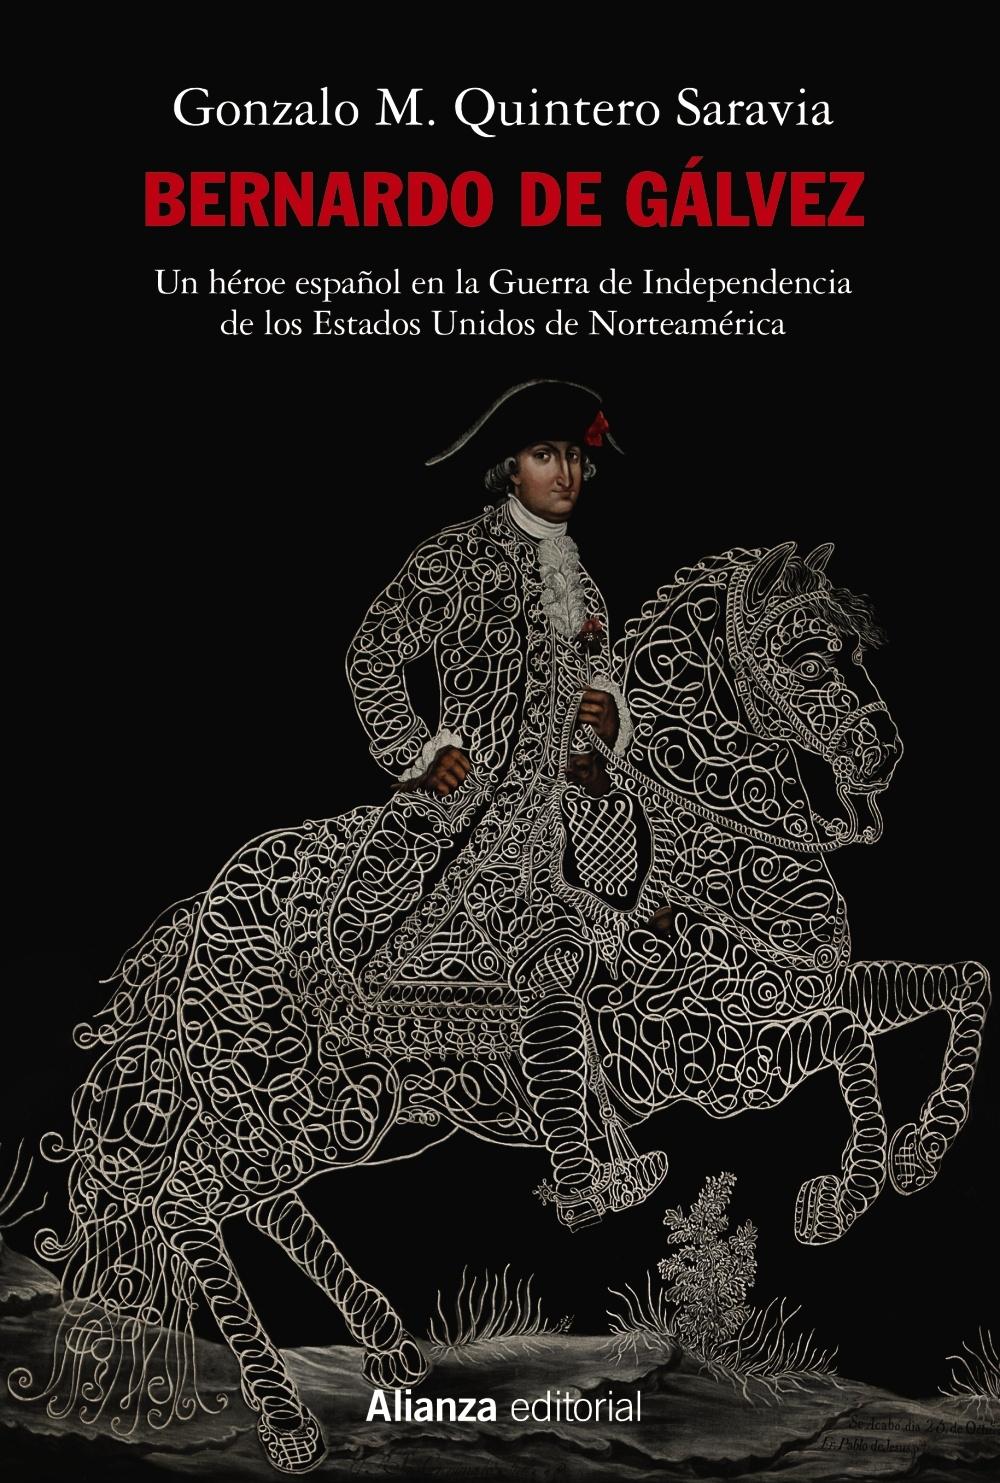 Bernardo de Gálvez "Un héroe español en la Guerra de Independencia de los Estados Unidos de". 